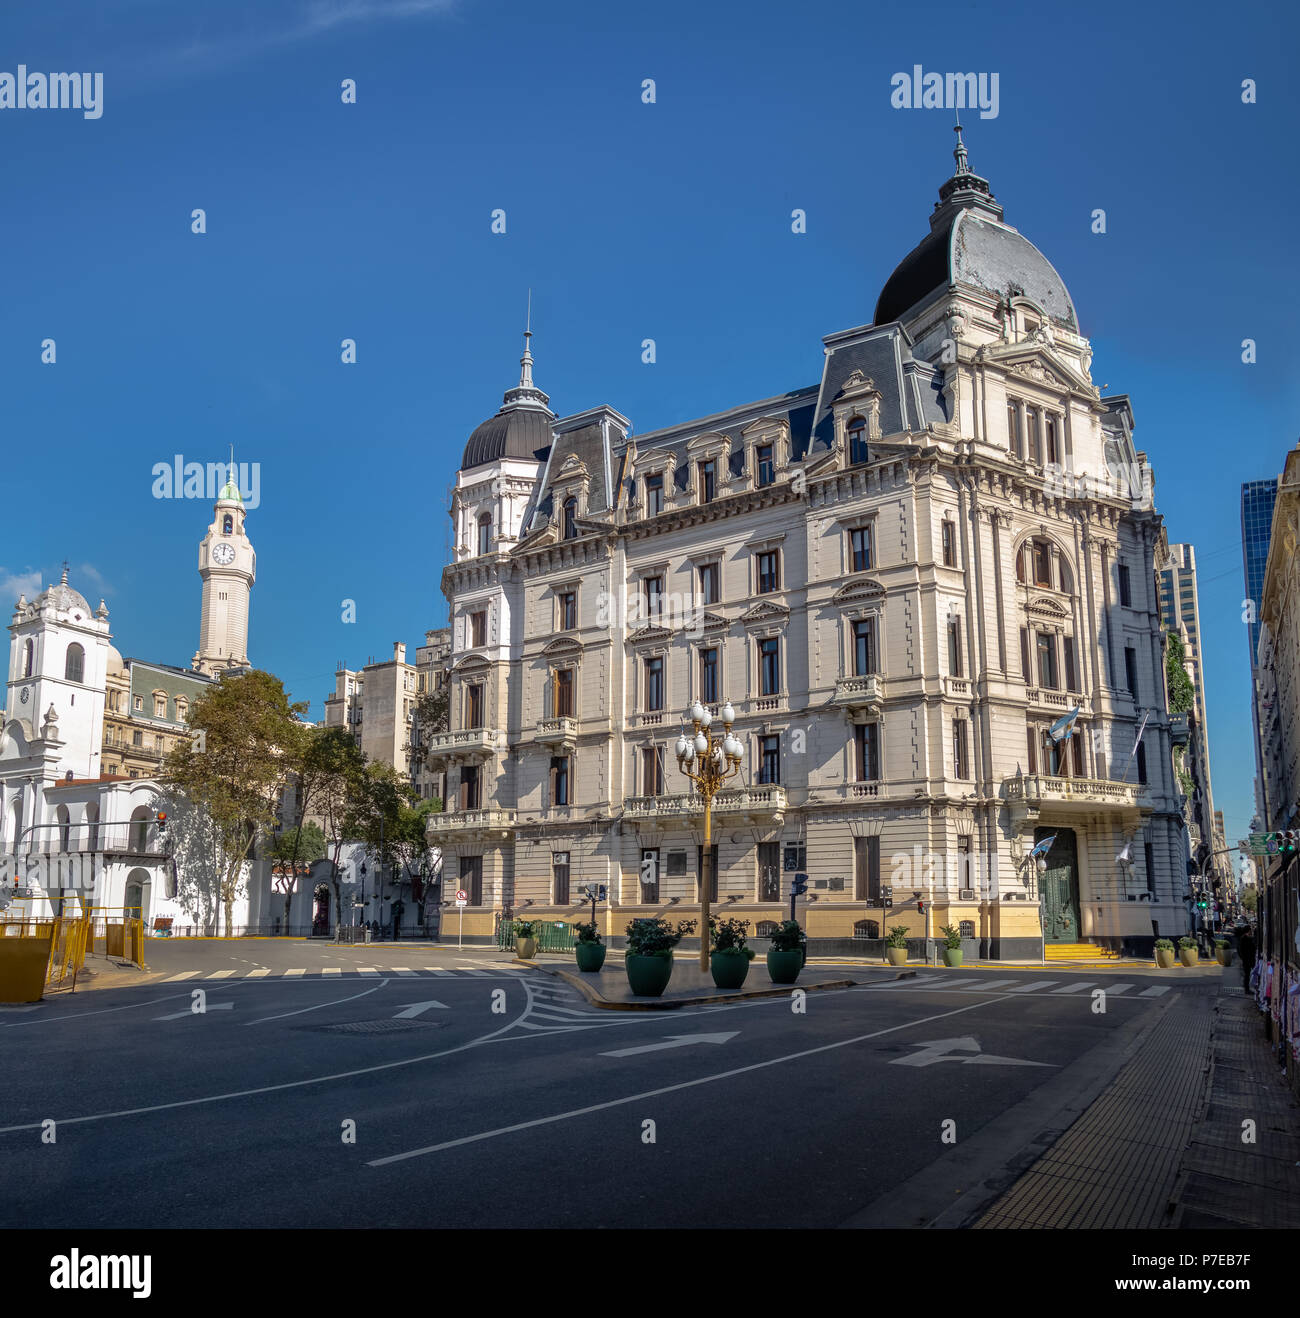 Buenos Aires City Hall - Palacio Municipal de la Ciudad de Buenos Aires - Buenos Aires, Argentina Foto de stock